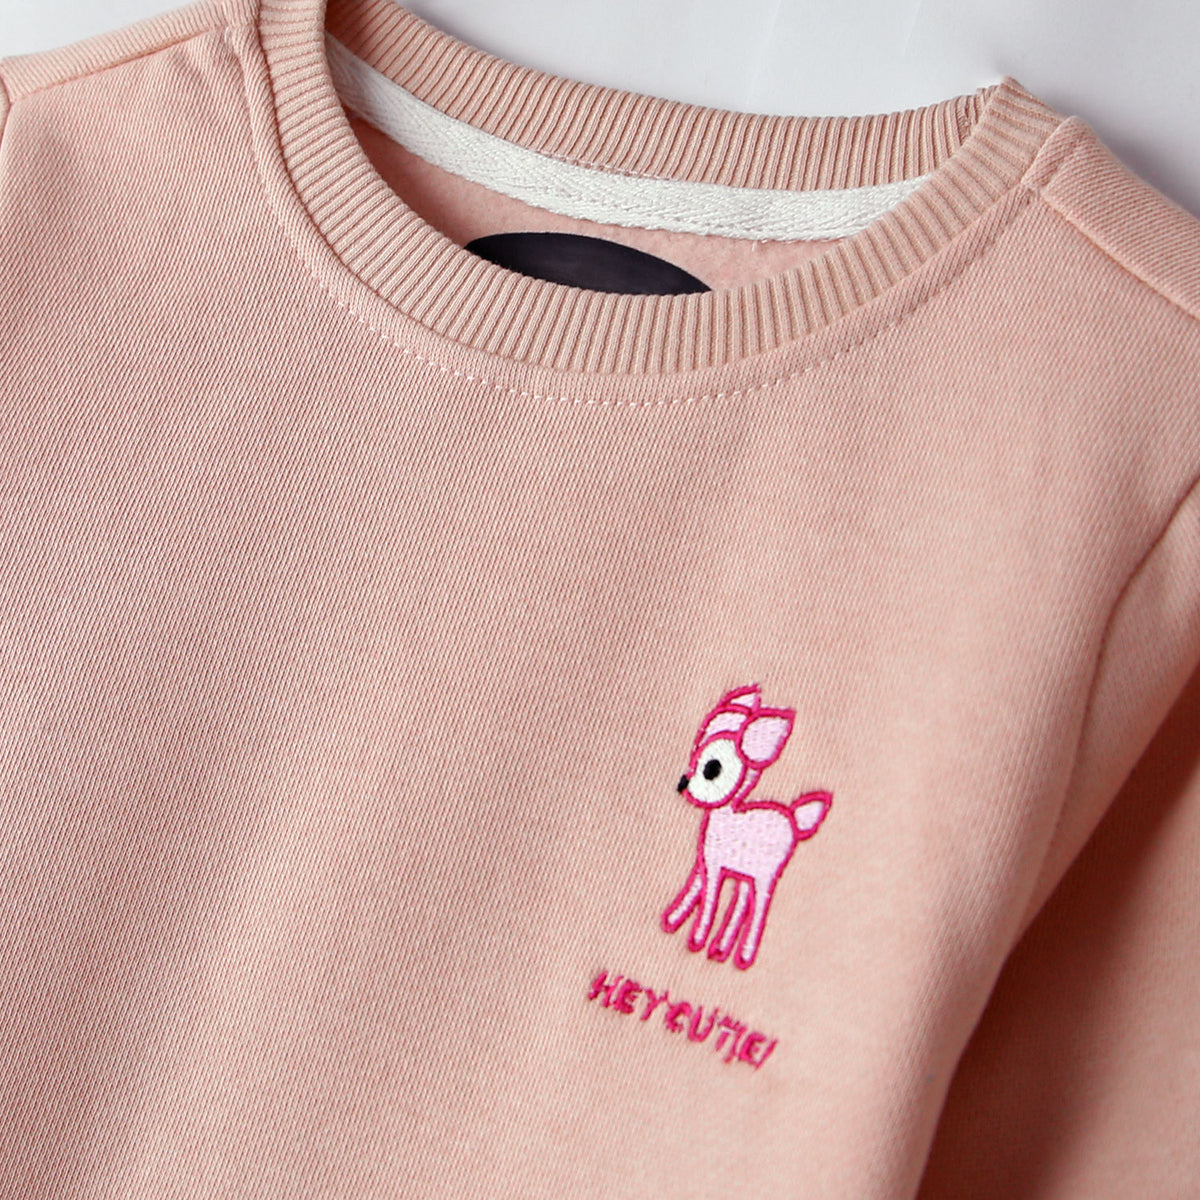 Premium Quality Girls Embroidered Fleece SweatShirt